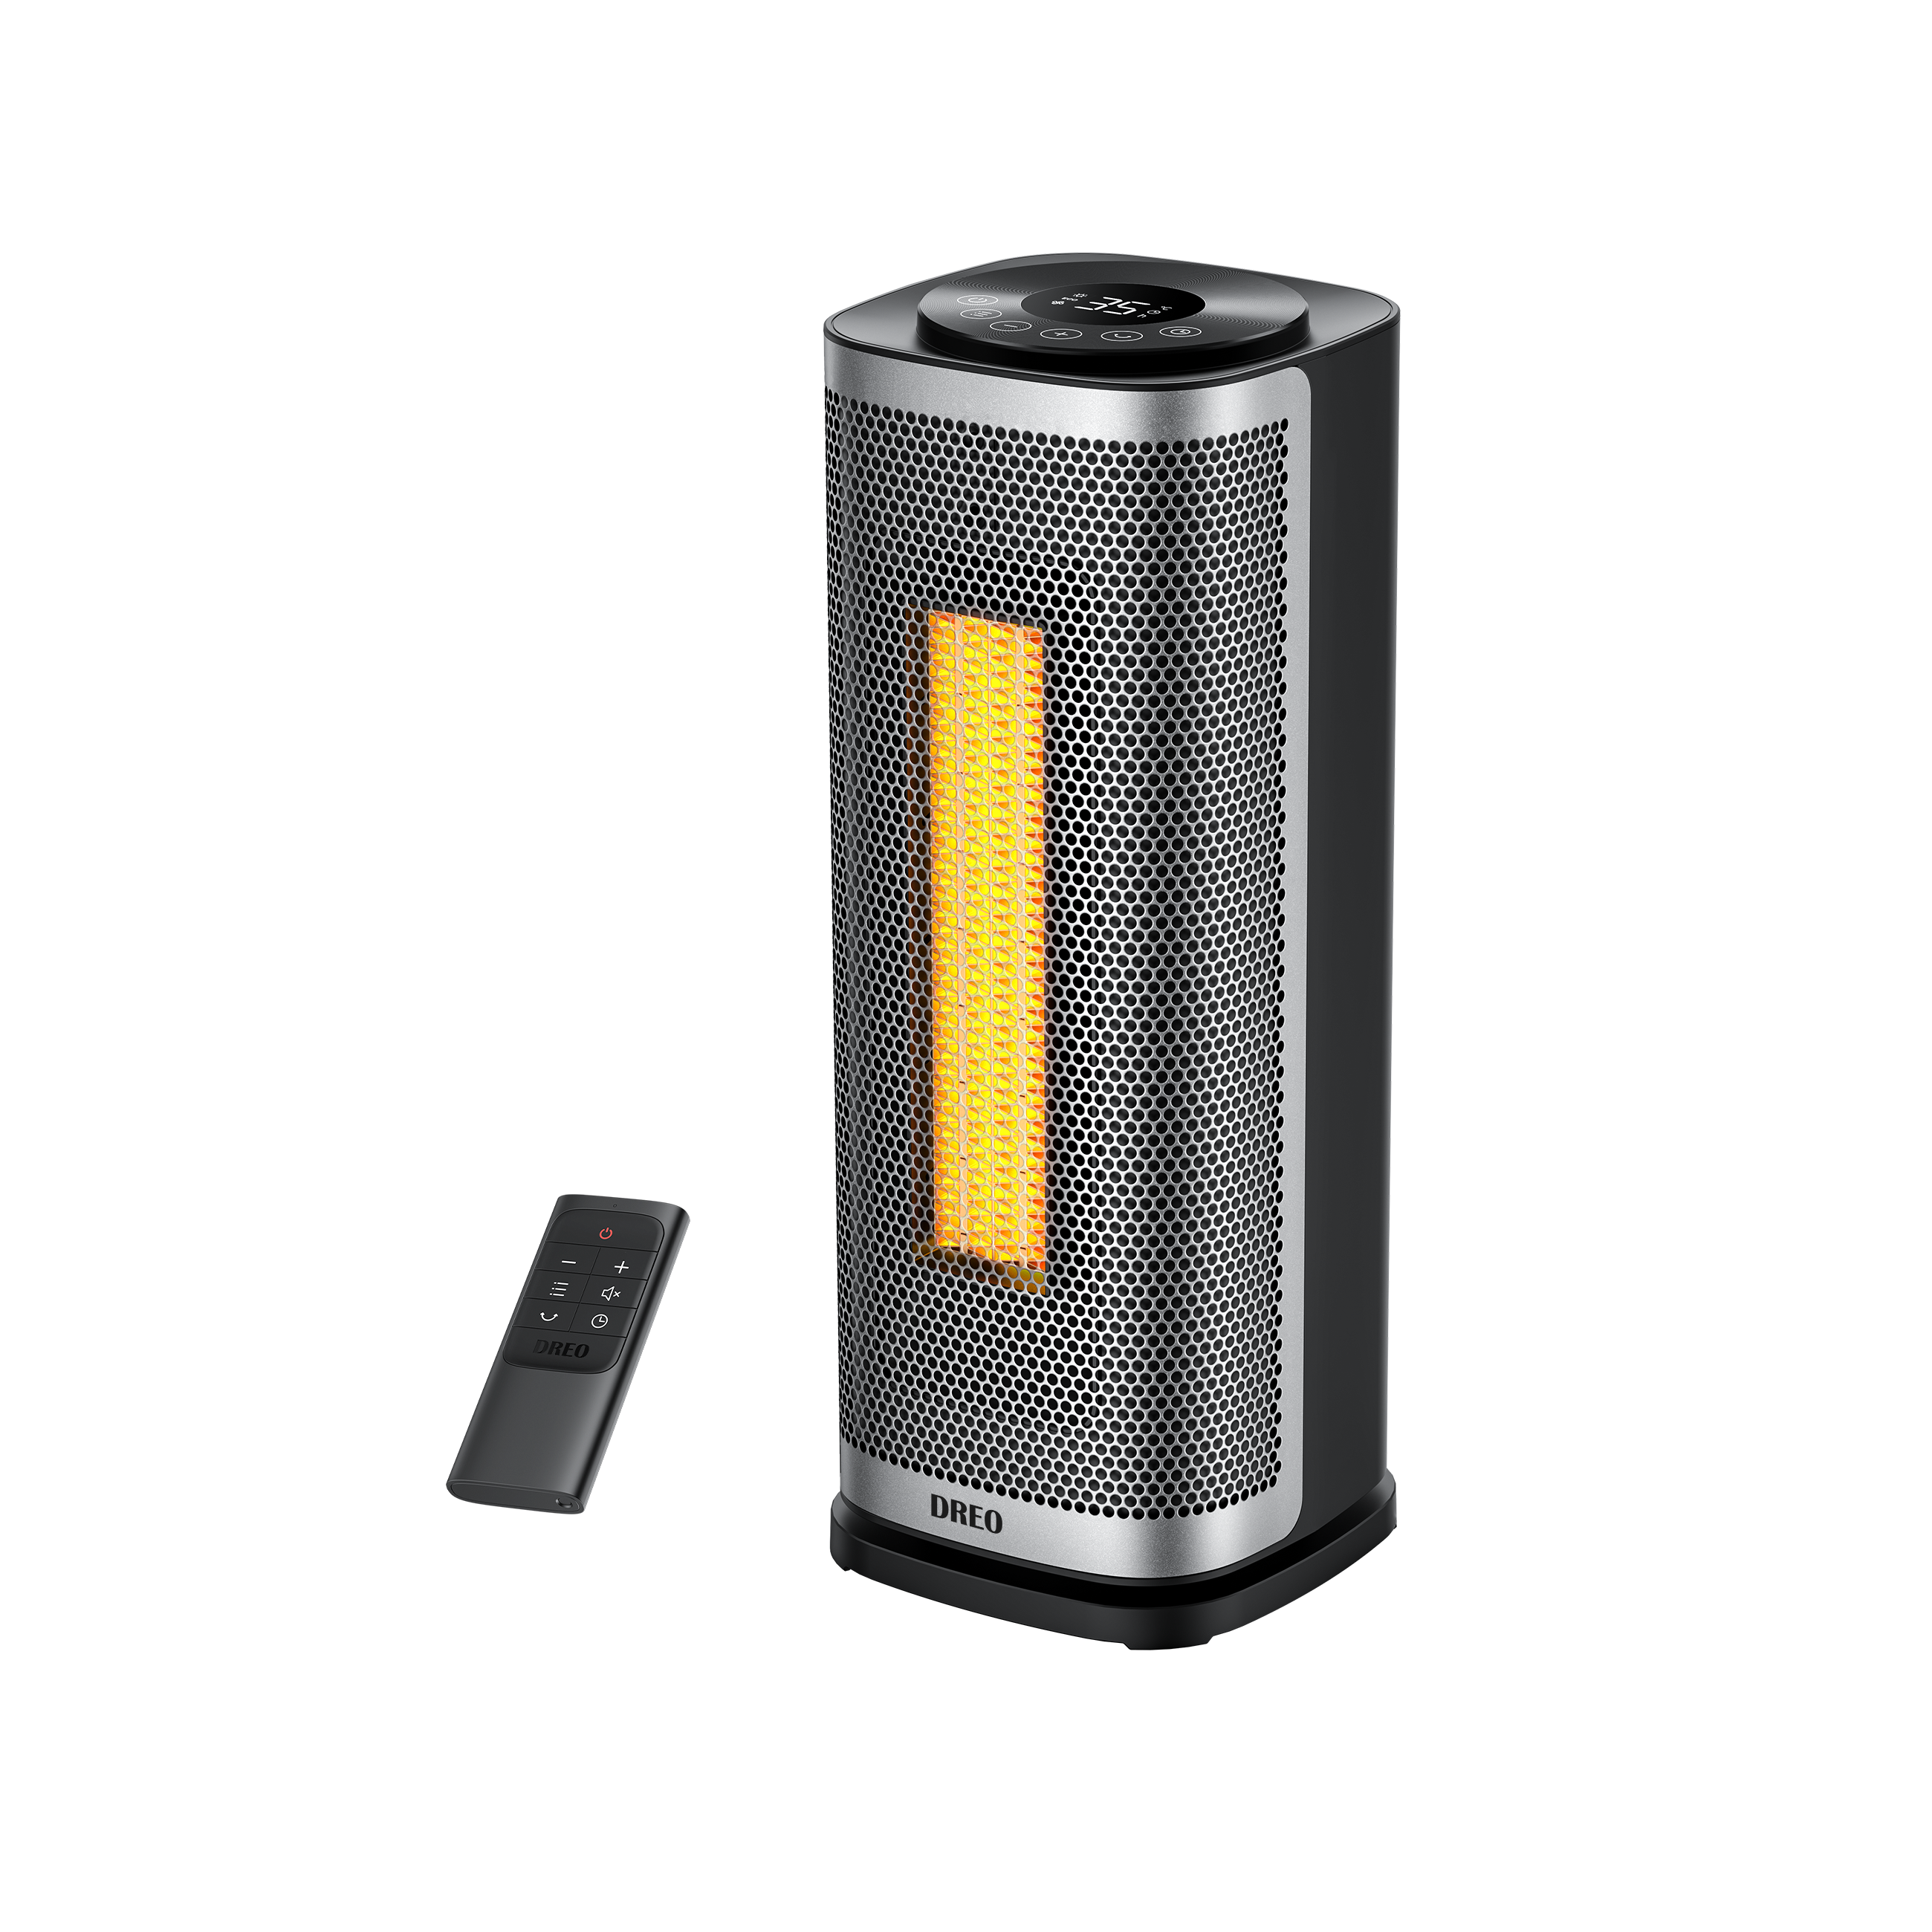 Space Heater - Solaris Slim H2